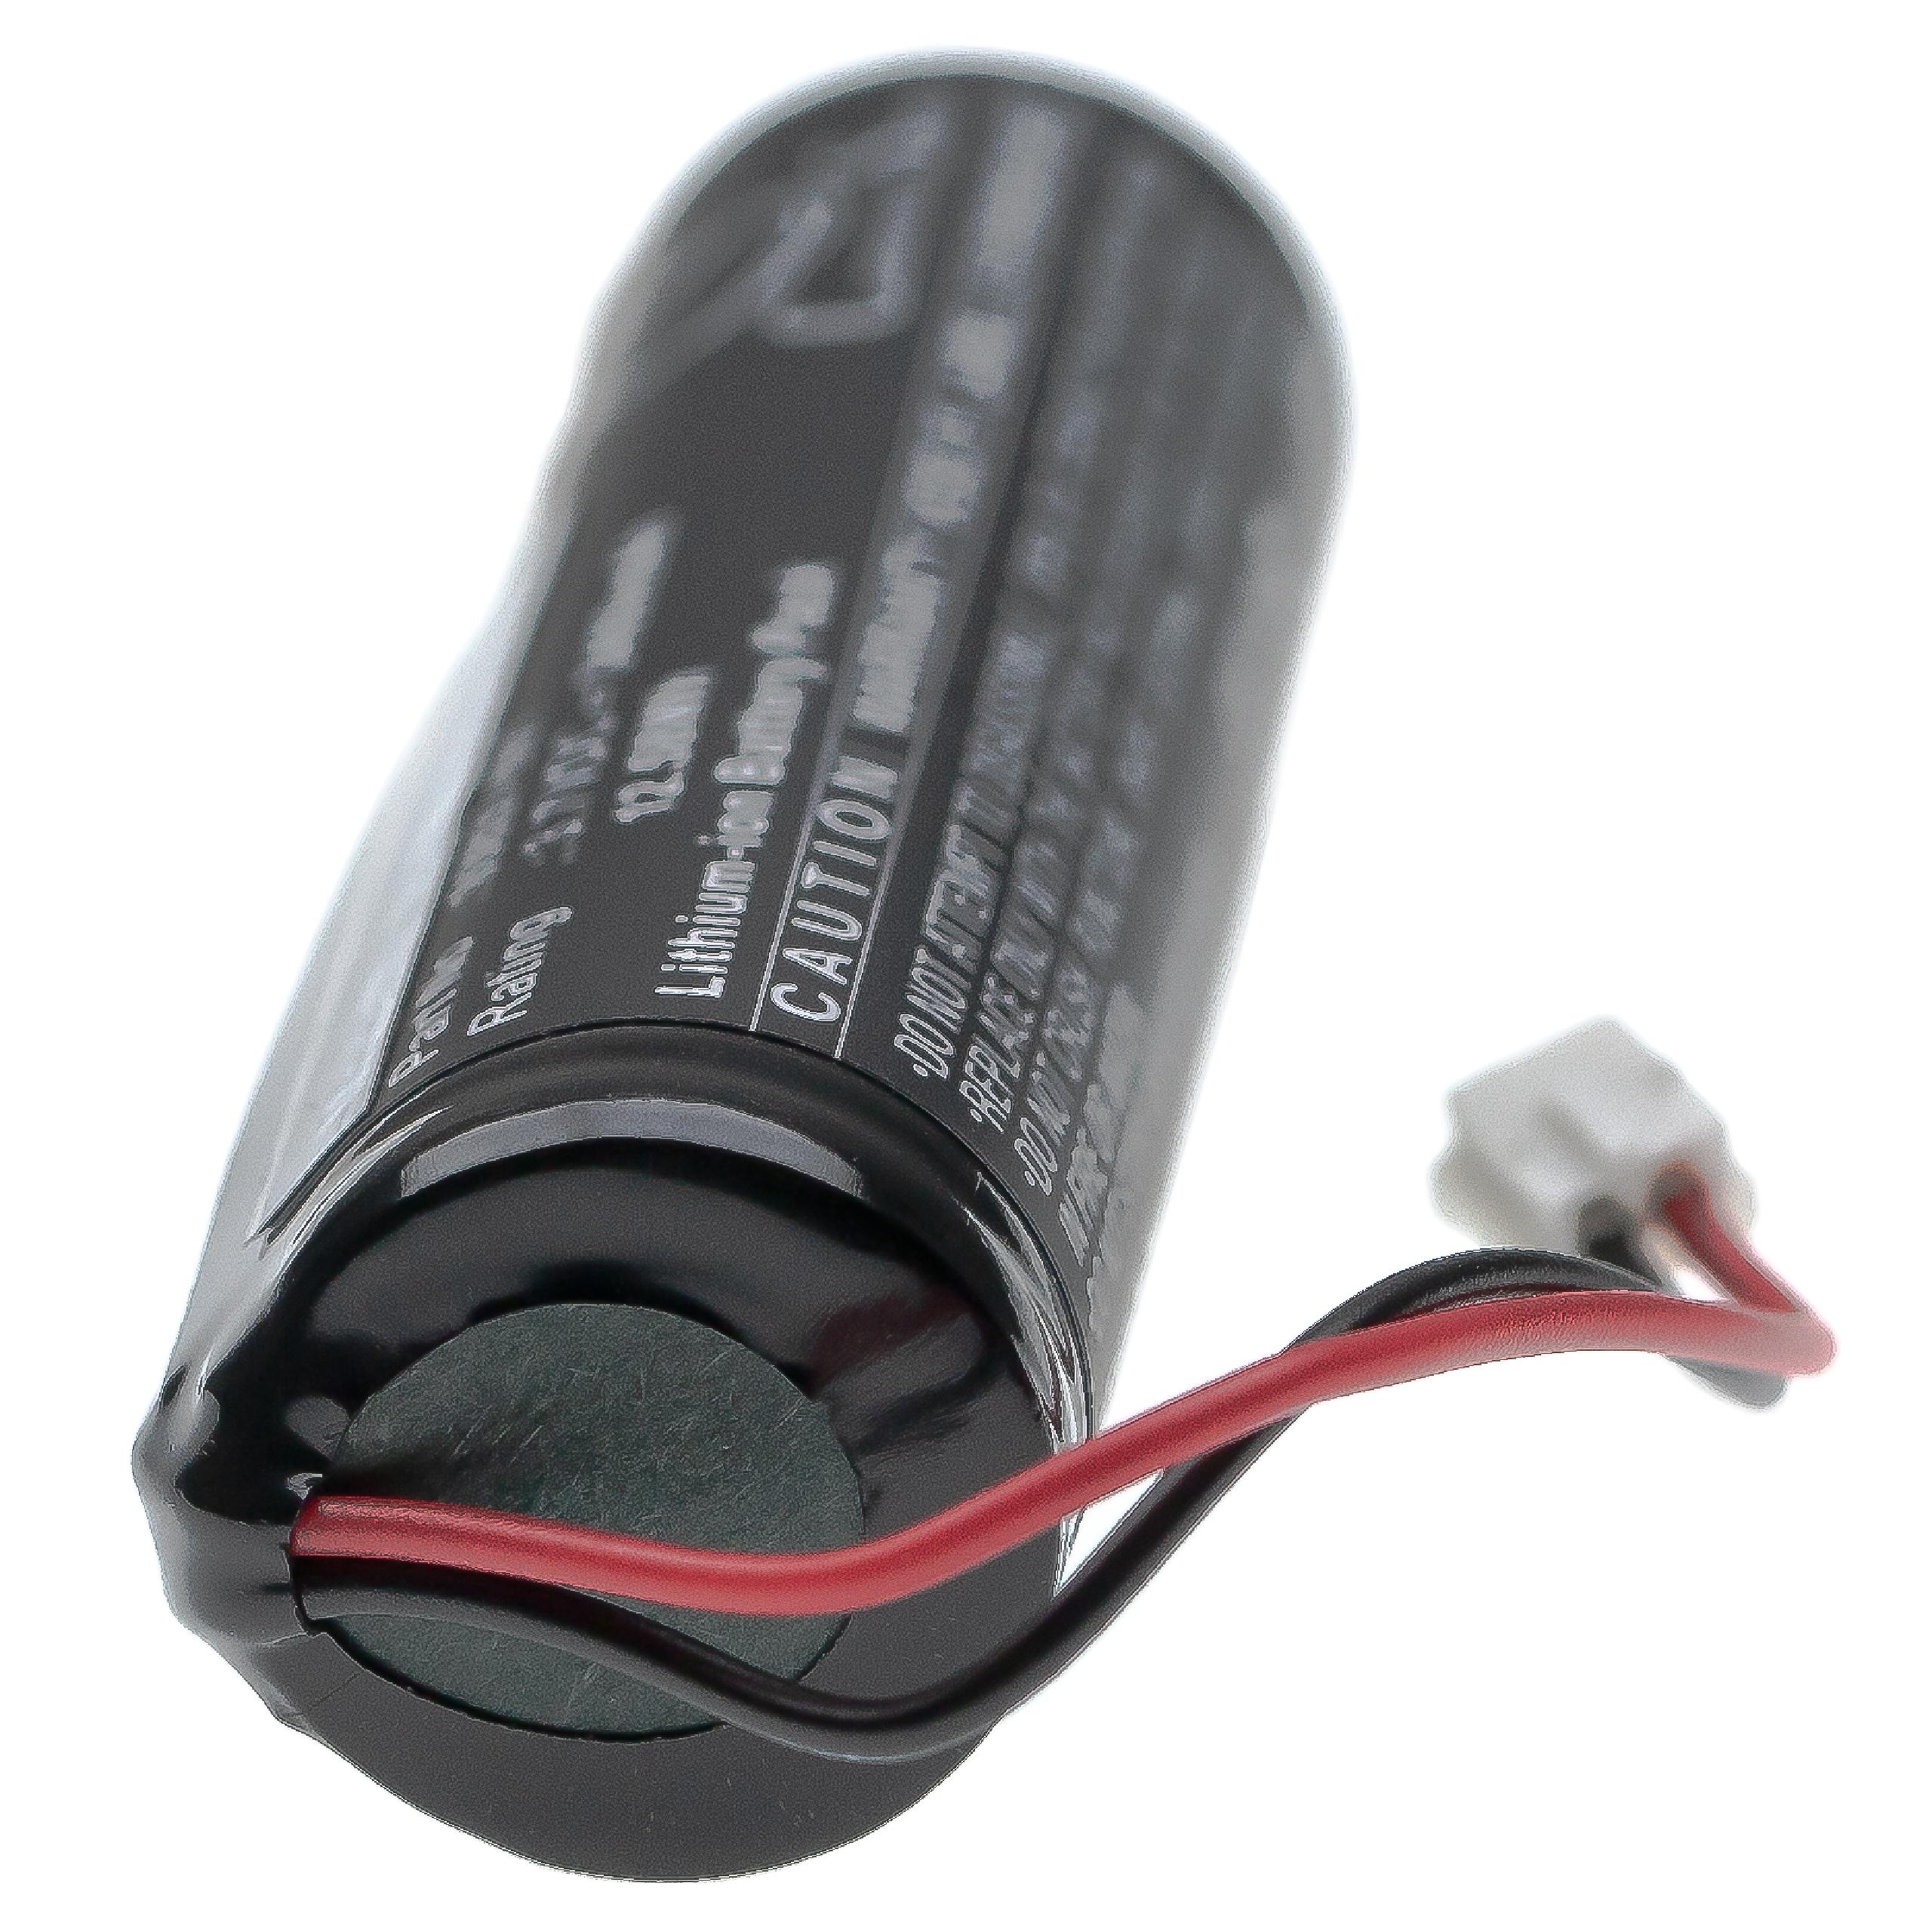 Batería reemplaza Wahl 93837-001, 93837-200 para afeitadora Wahl - 3400 mAh 3,7 V Li-Ion